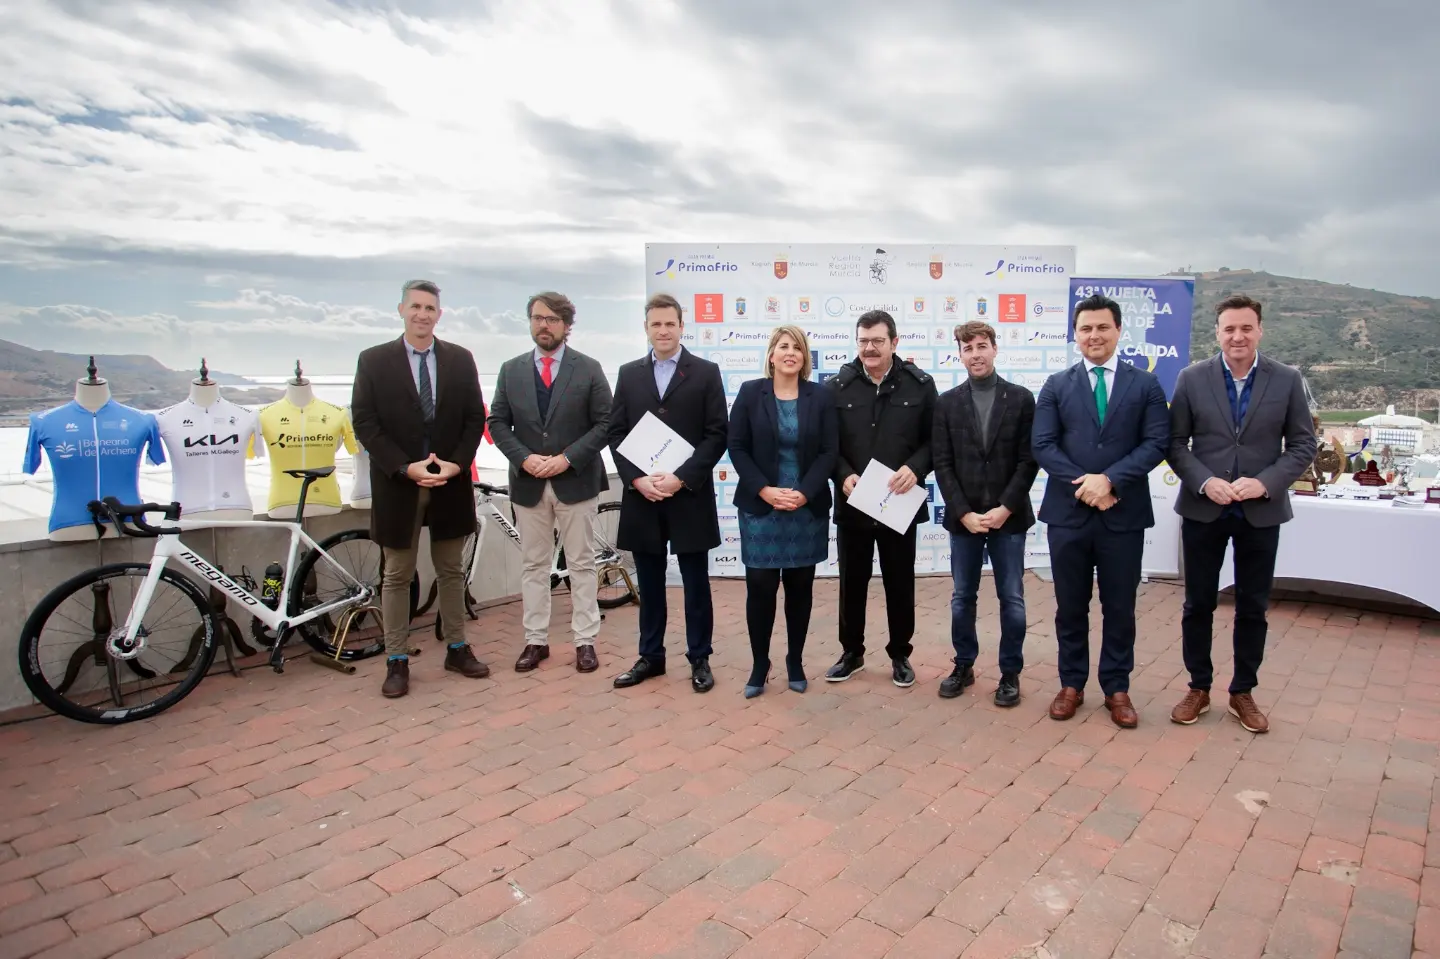 Presentada la Vuelta Ciclista a la Región de Murcia Costa Cálida – Gran Premio Primafrio